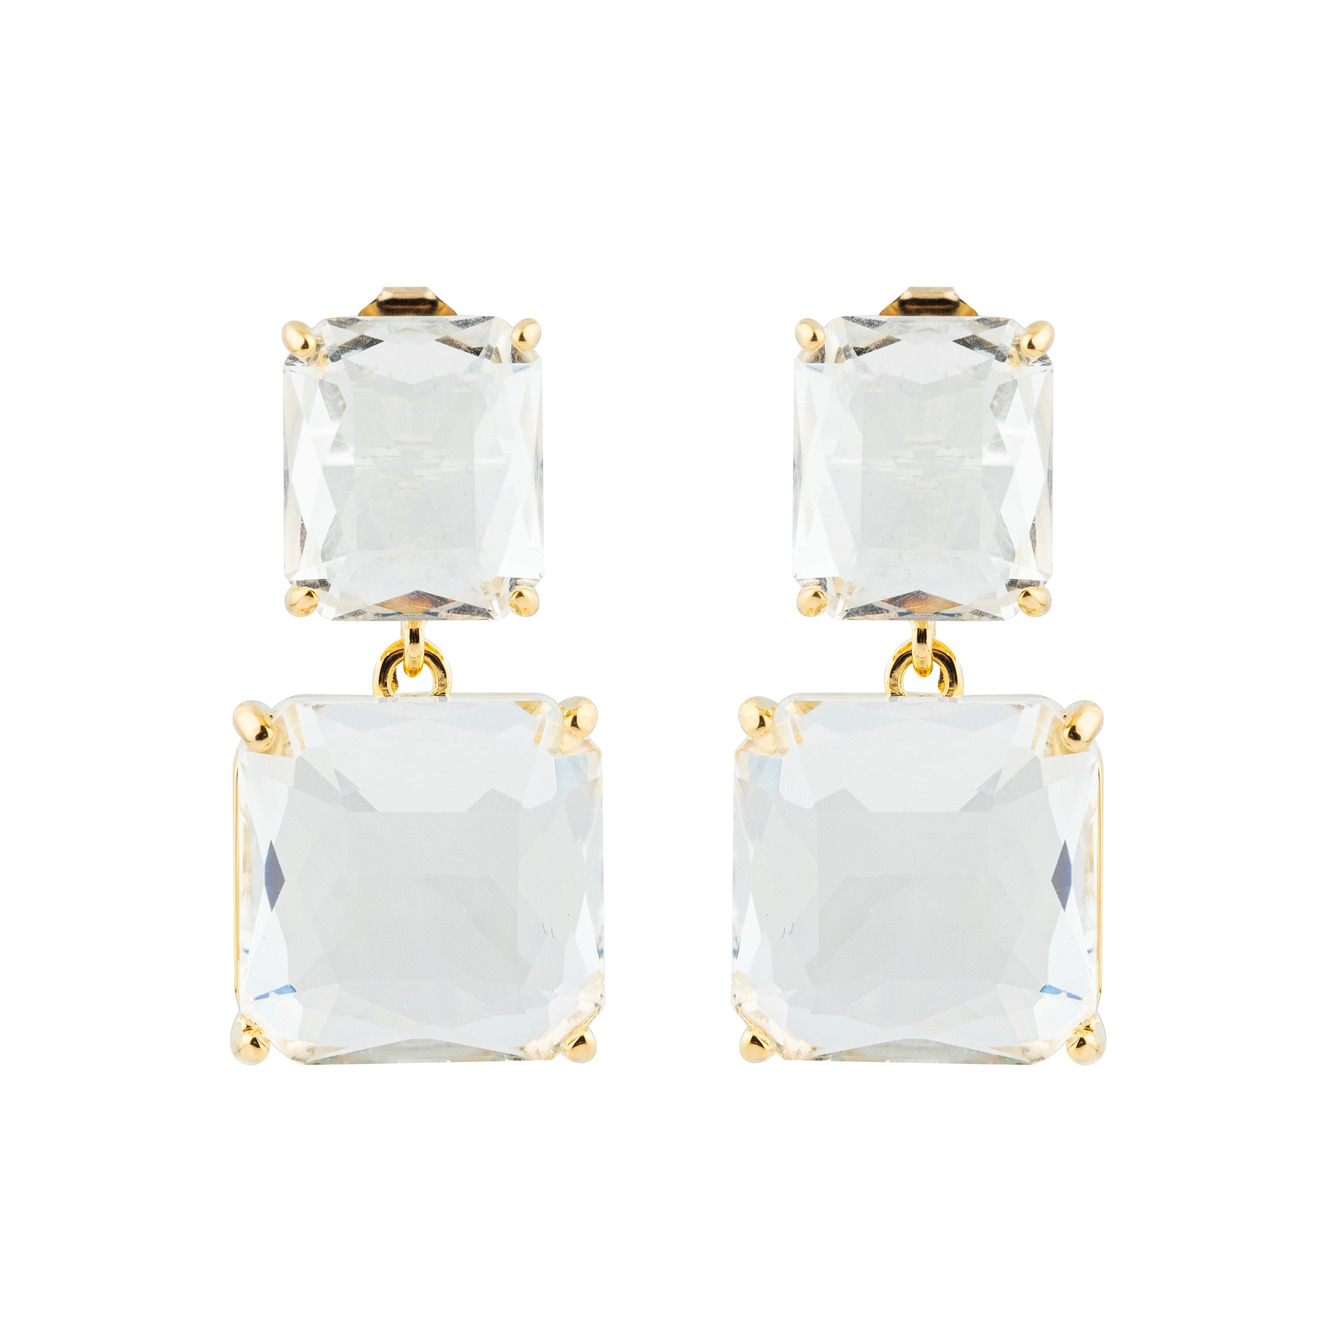 Herald Percy Двойные золотистые серьги с белыми кристаллами